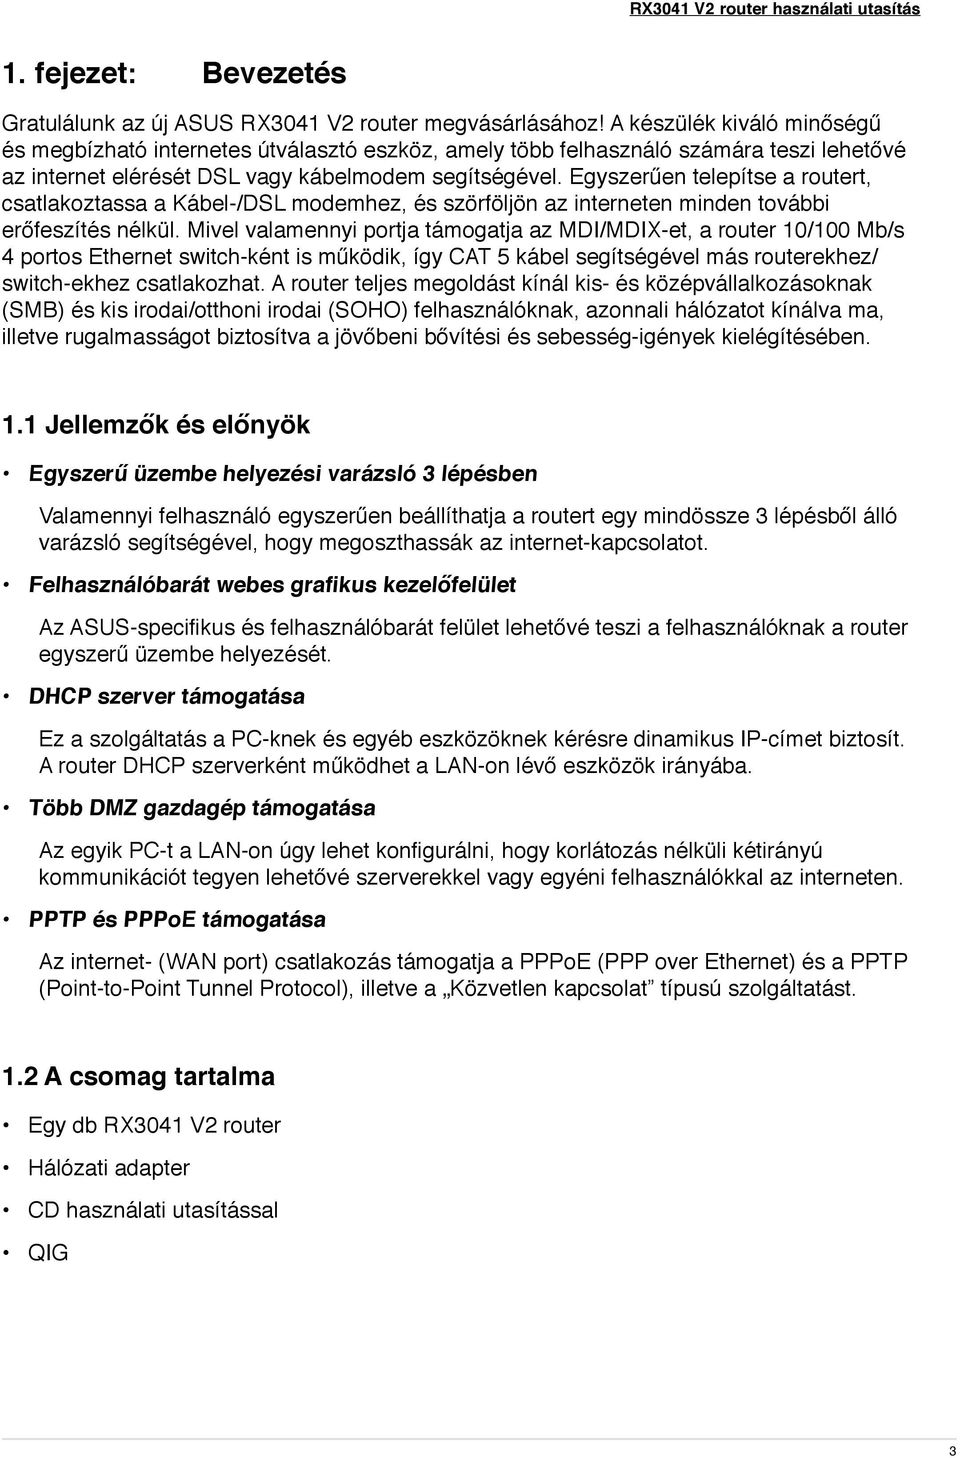 RX3041 V2. Használati utasítás - PDF Ingyenes letöltés